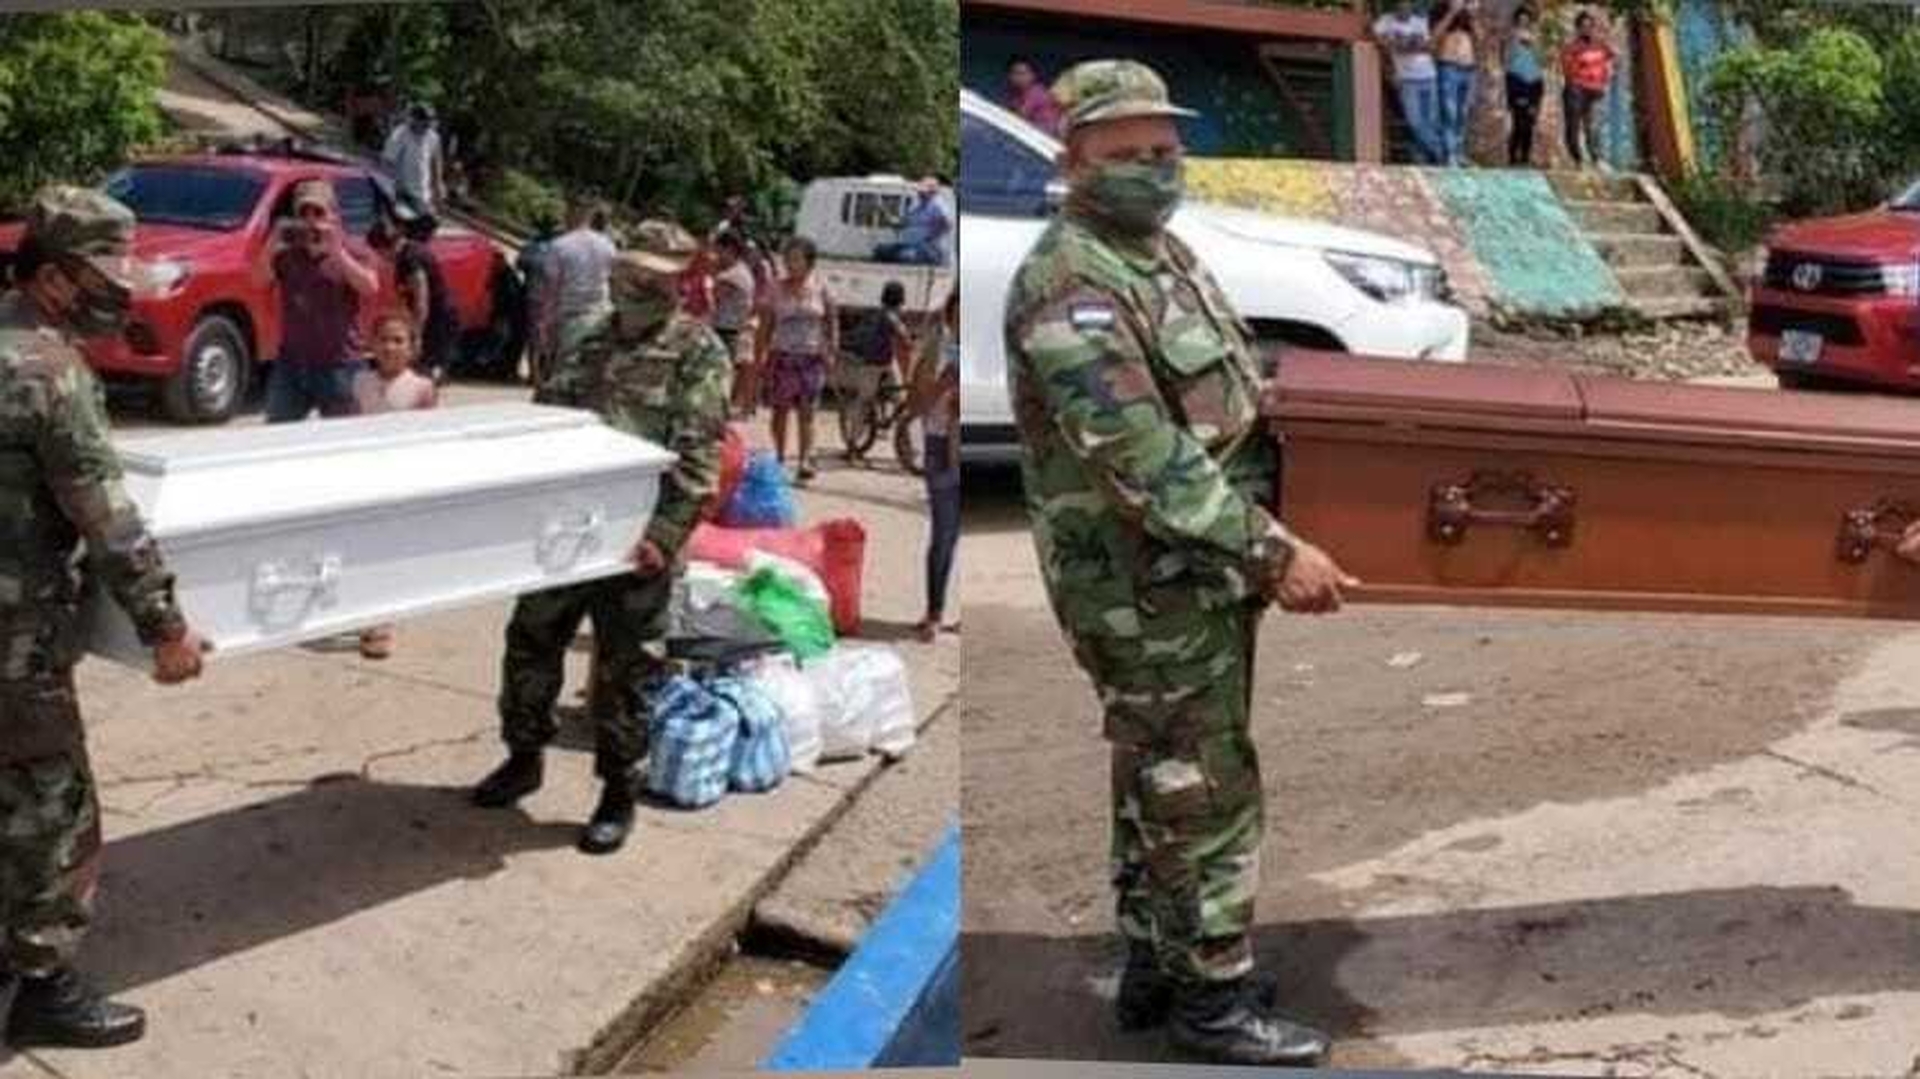 Las imagenes nos muestran el preciso momento del traslado de las dos hermanitas asesinadas en Ciudad Belen en Managua hacía la comunidad de Walakitan.